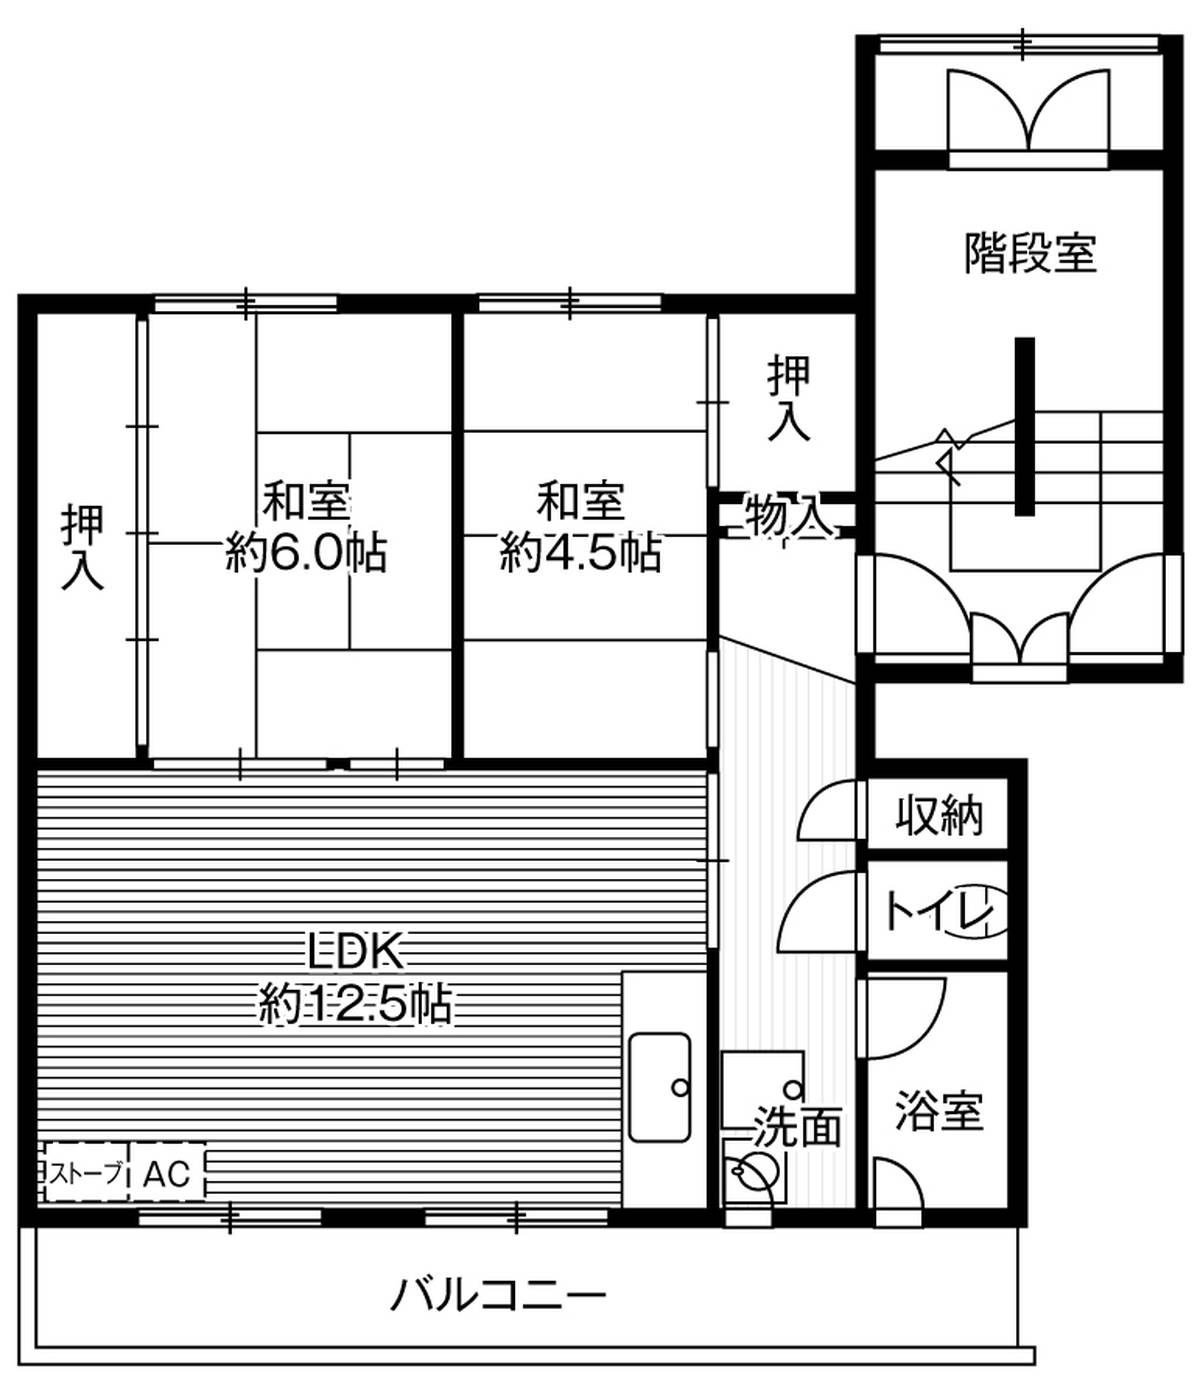 位于小樽市的Village House 潮見ヶ丘的平面图2LDK